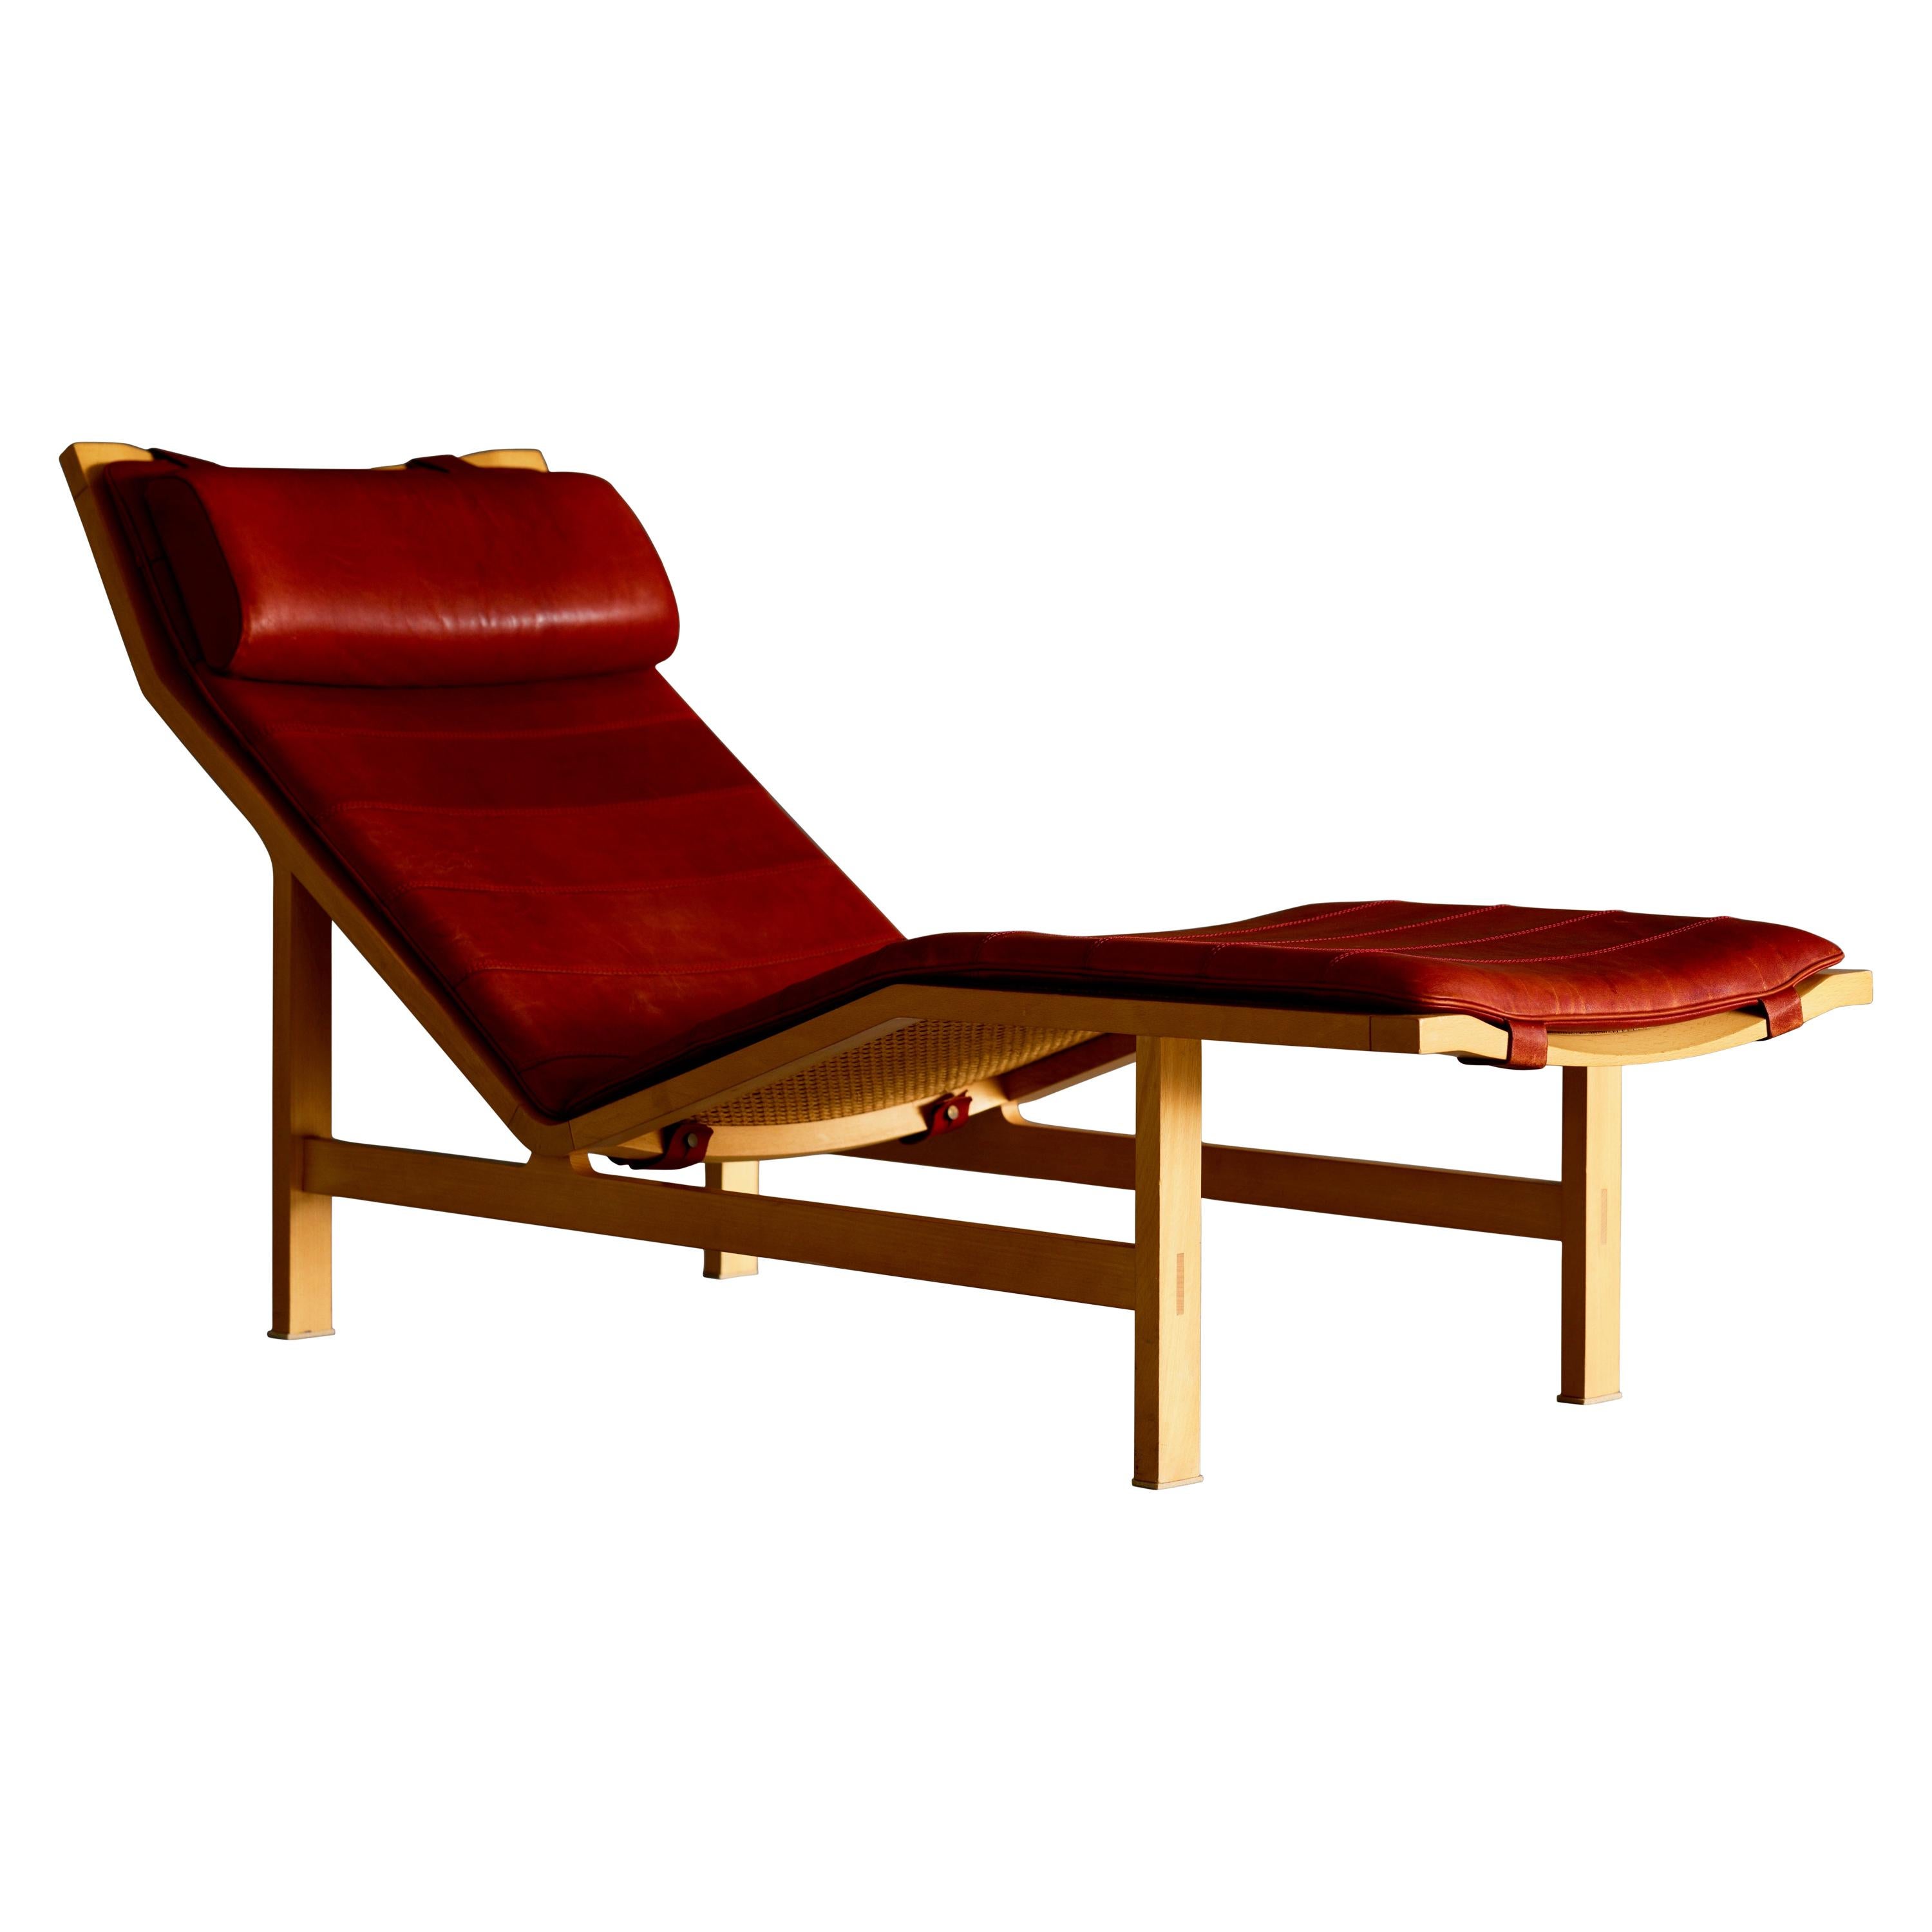 Chaise Lounge by Red Thygersen & Johnny Sorensen